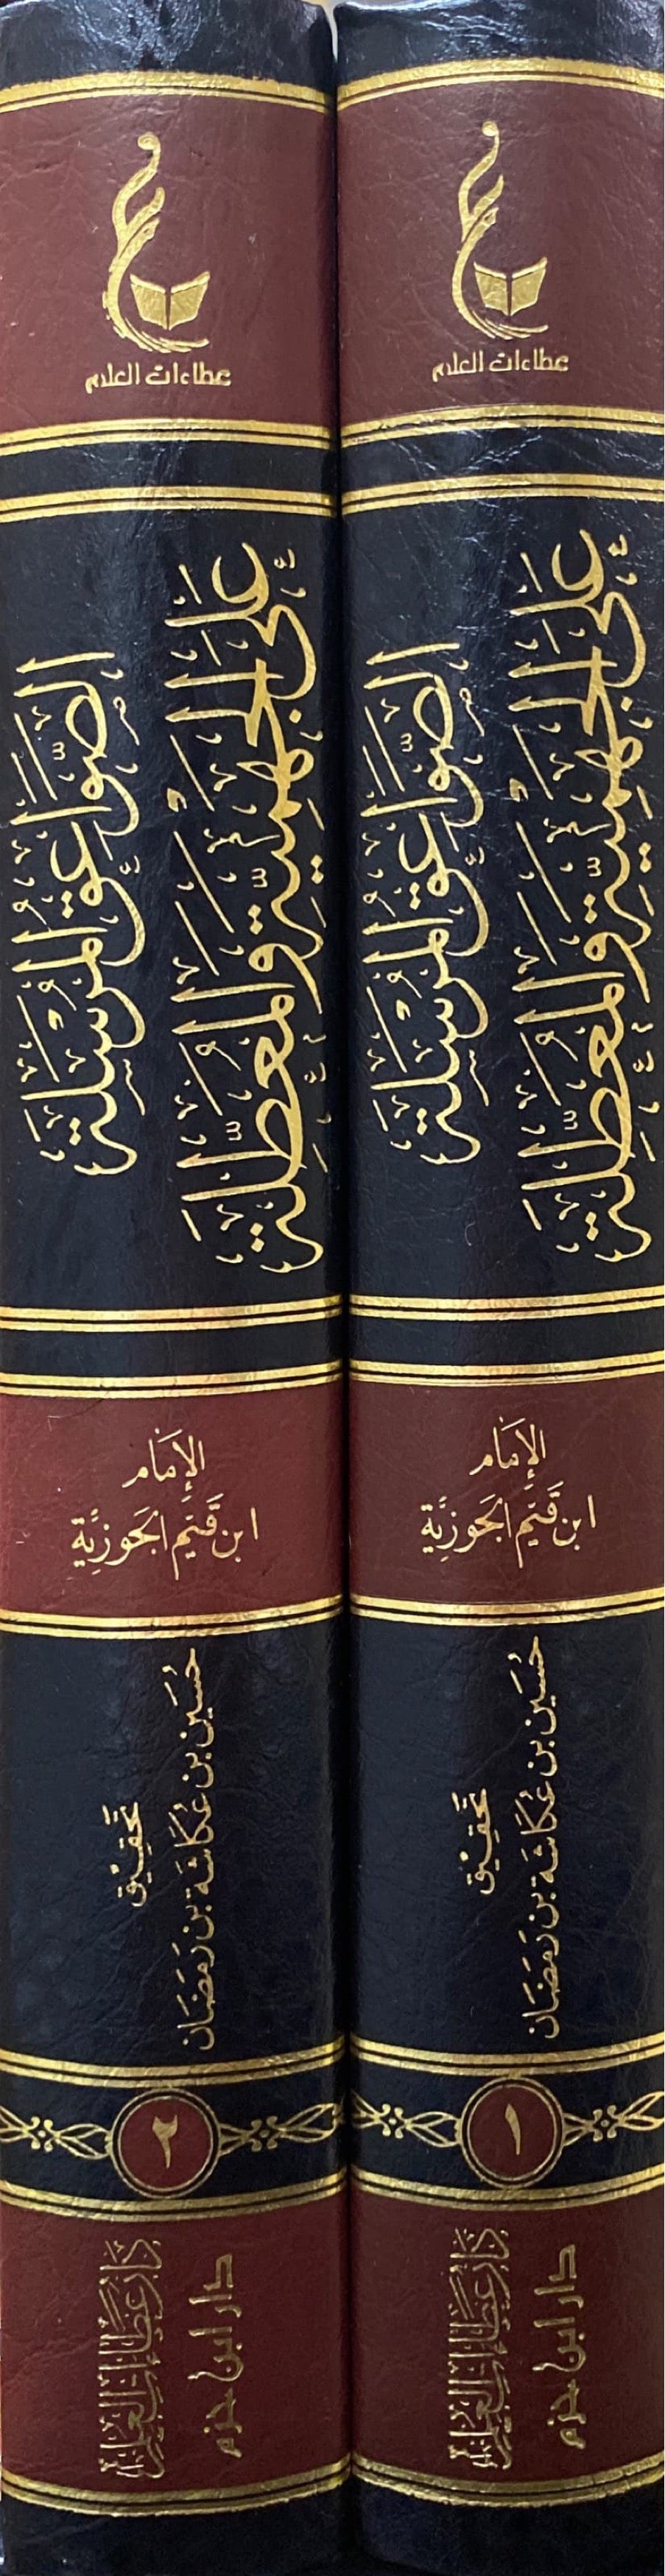 الصواعق المرسلة على الجهمية والمعطلة    As Sawaiq Al Mursalah (2 Vol)(Hazm)